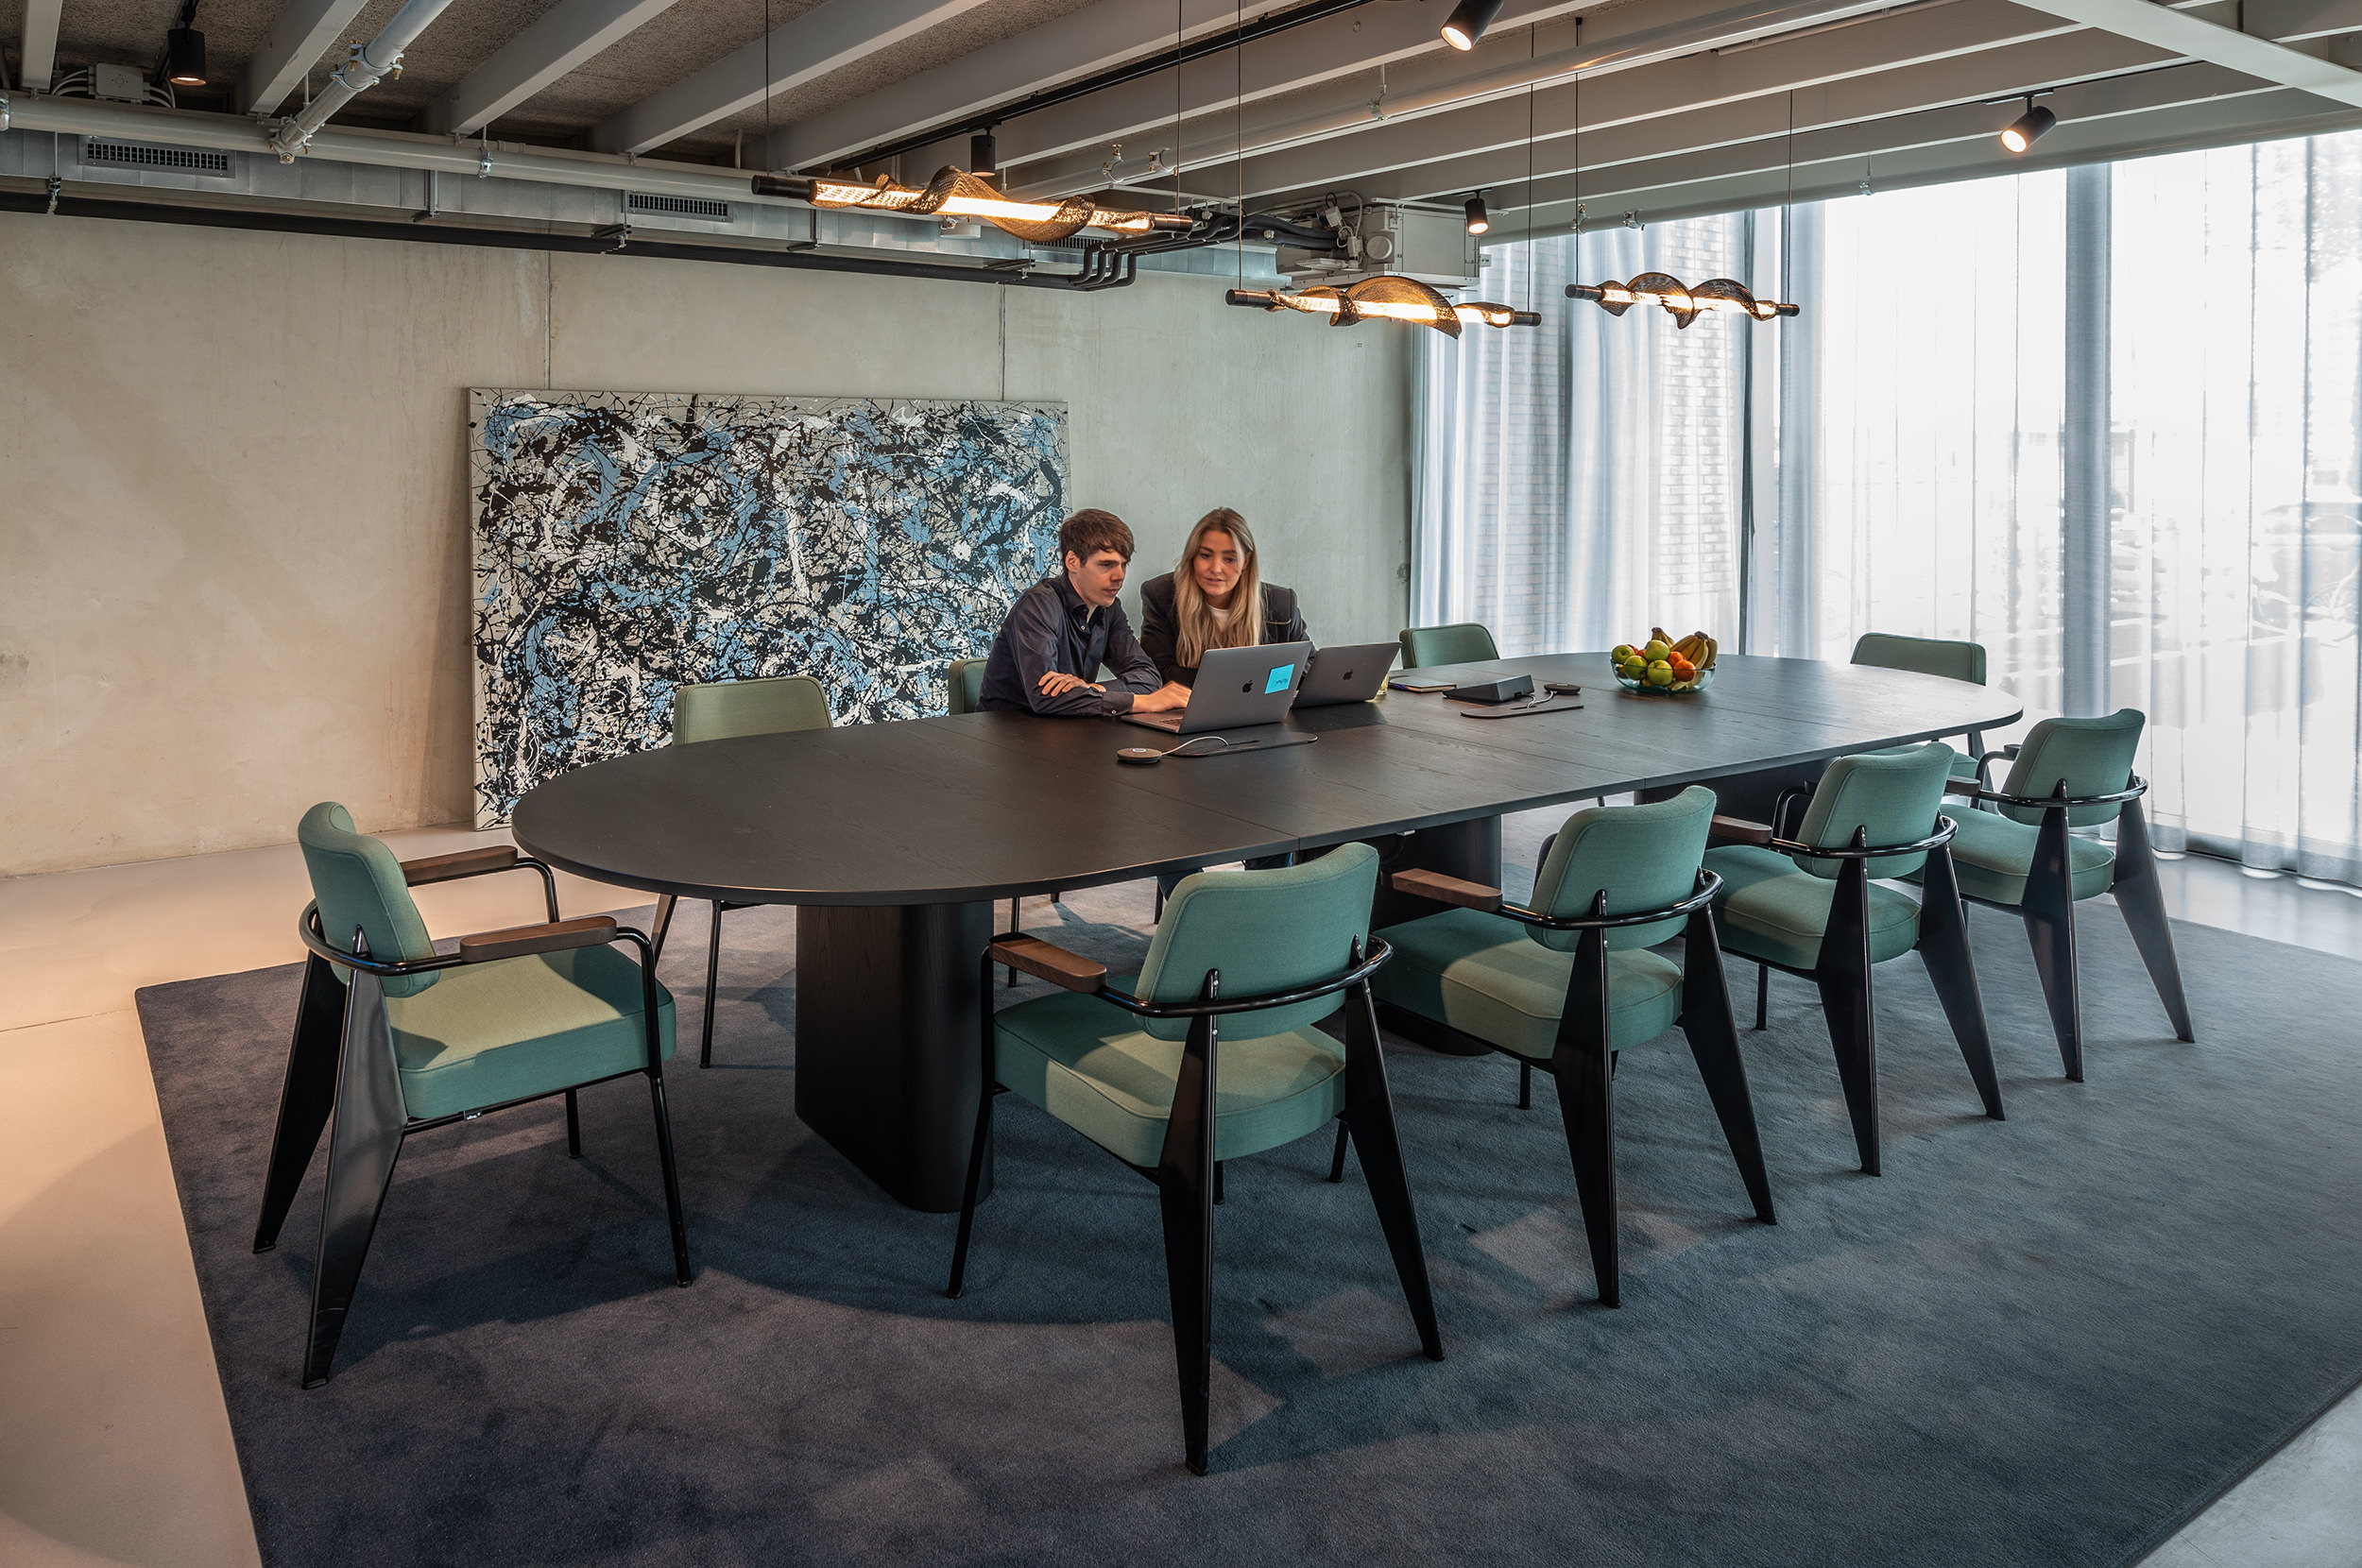 Meetingruimte met langwerpige zwarte ovalen tafel met tien groene stoelen eromheen waar twee mensen aan zitten te werken.